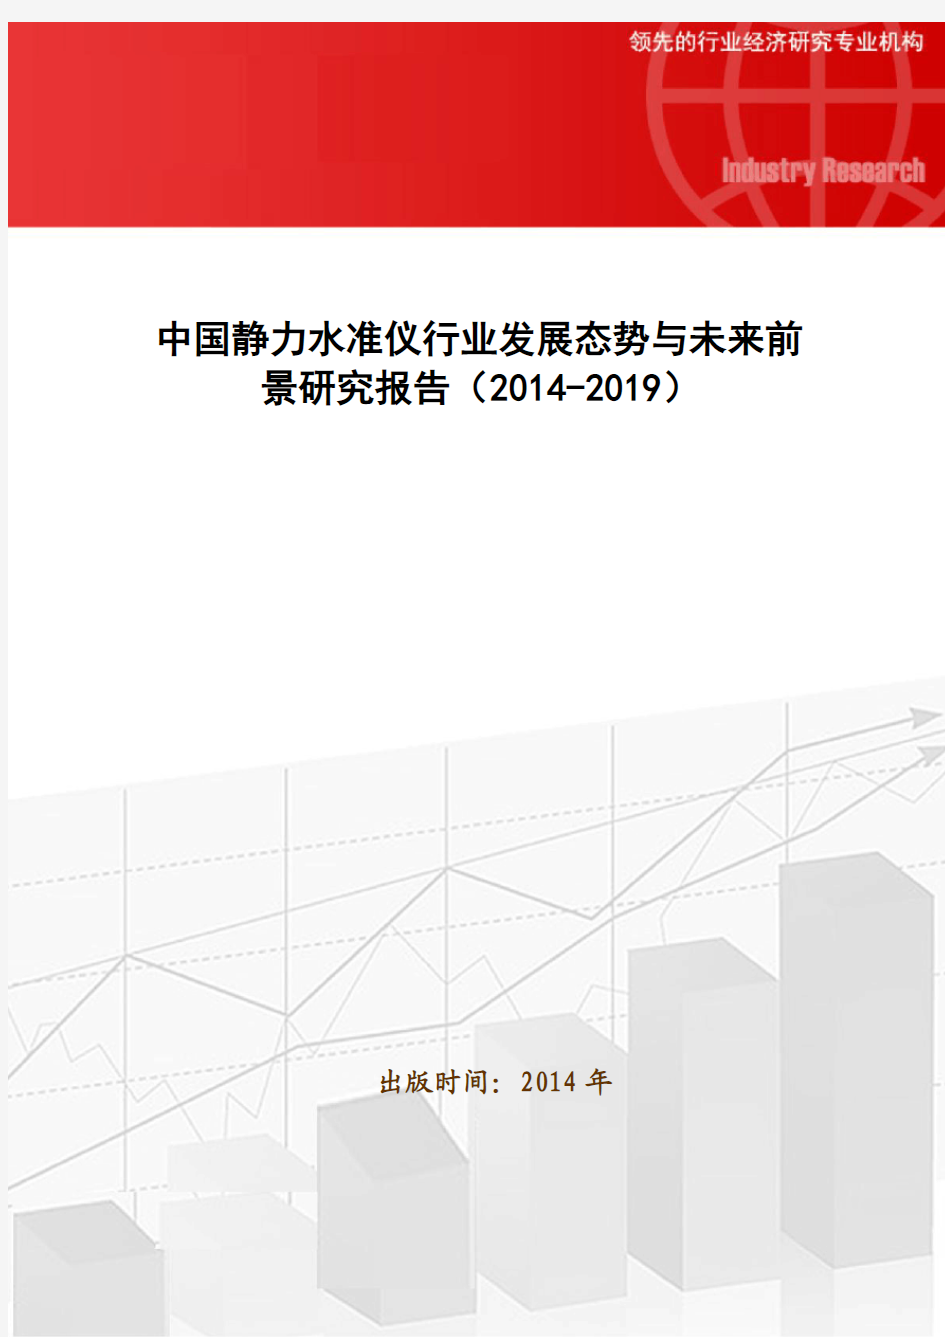 中国静力水准仪行业发展态势与未来前景研究报告(2014-2019)